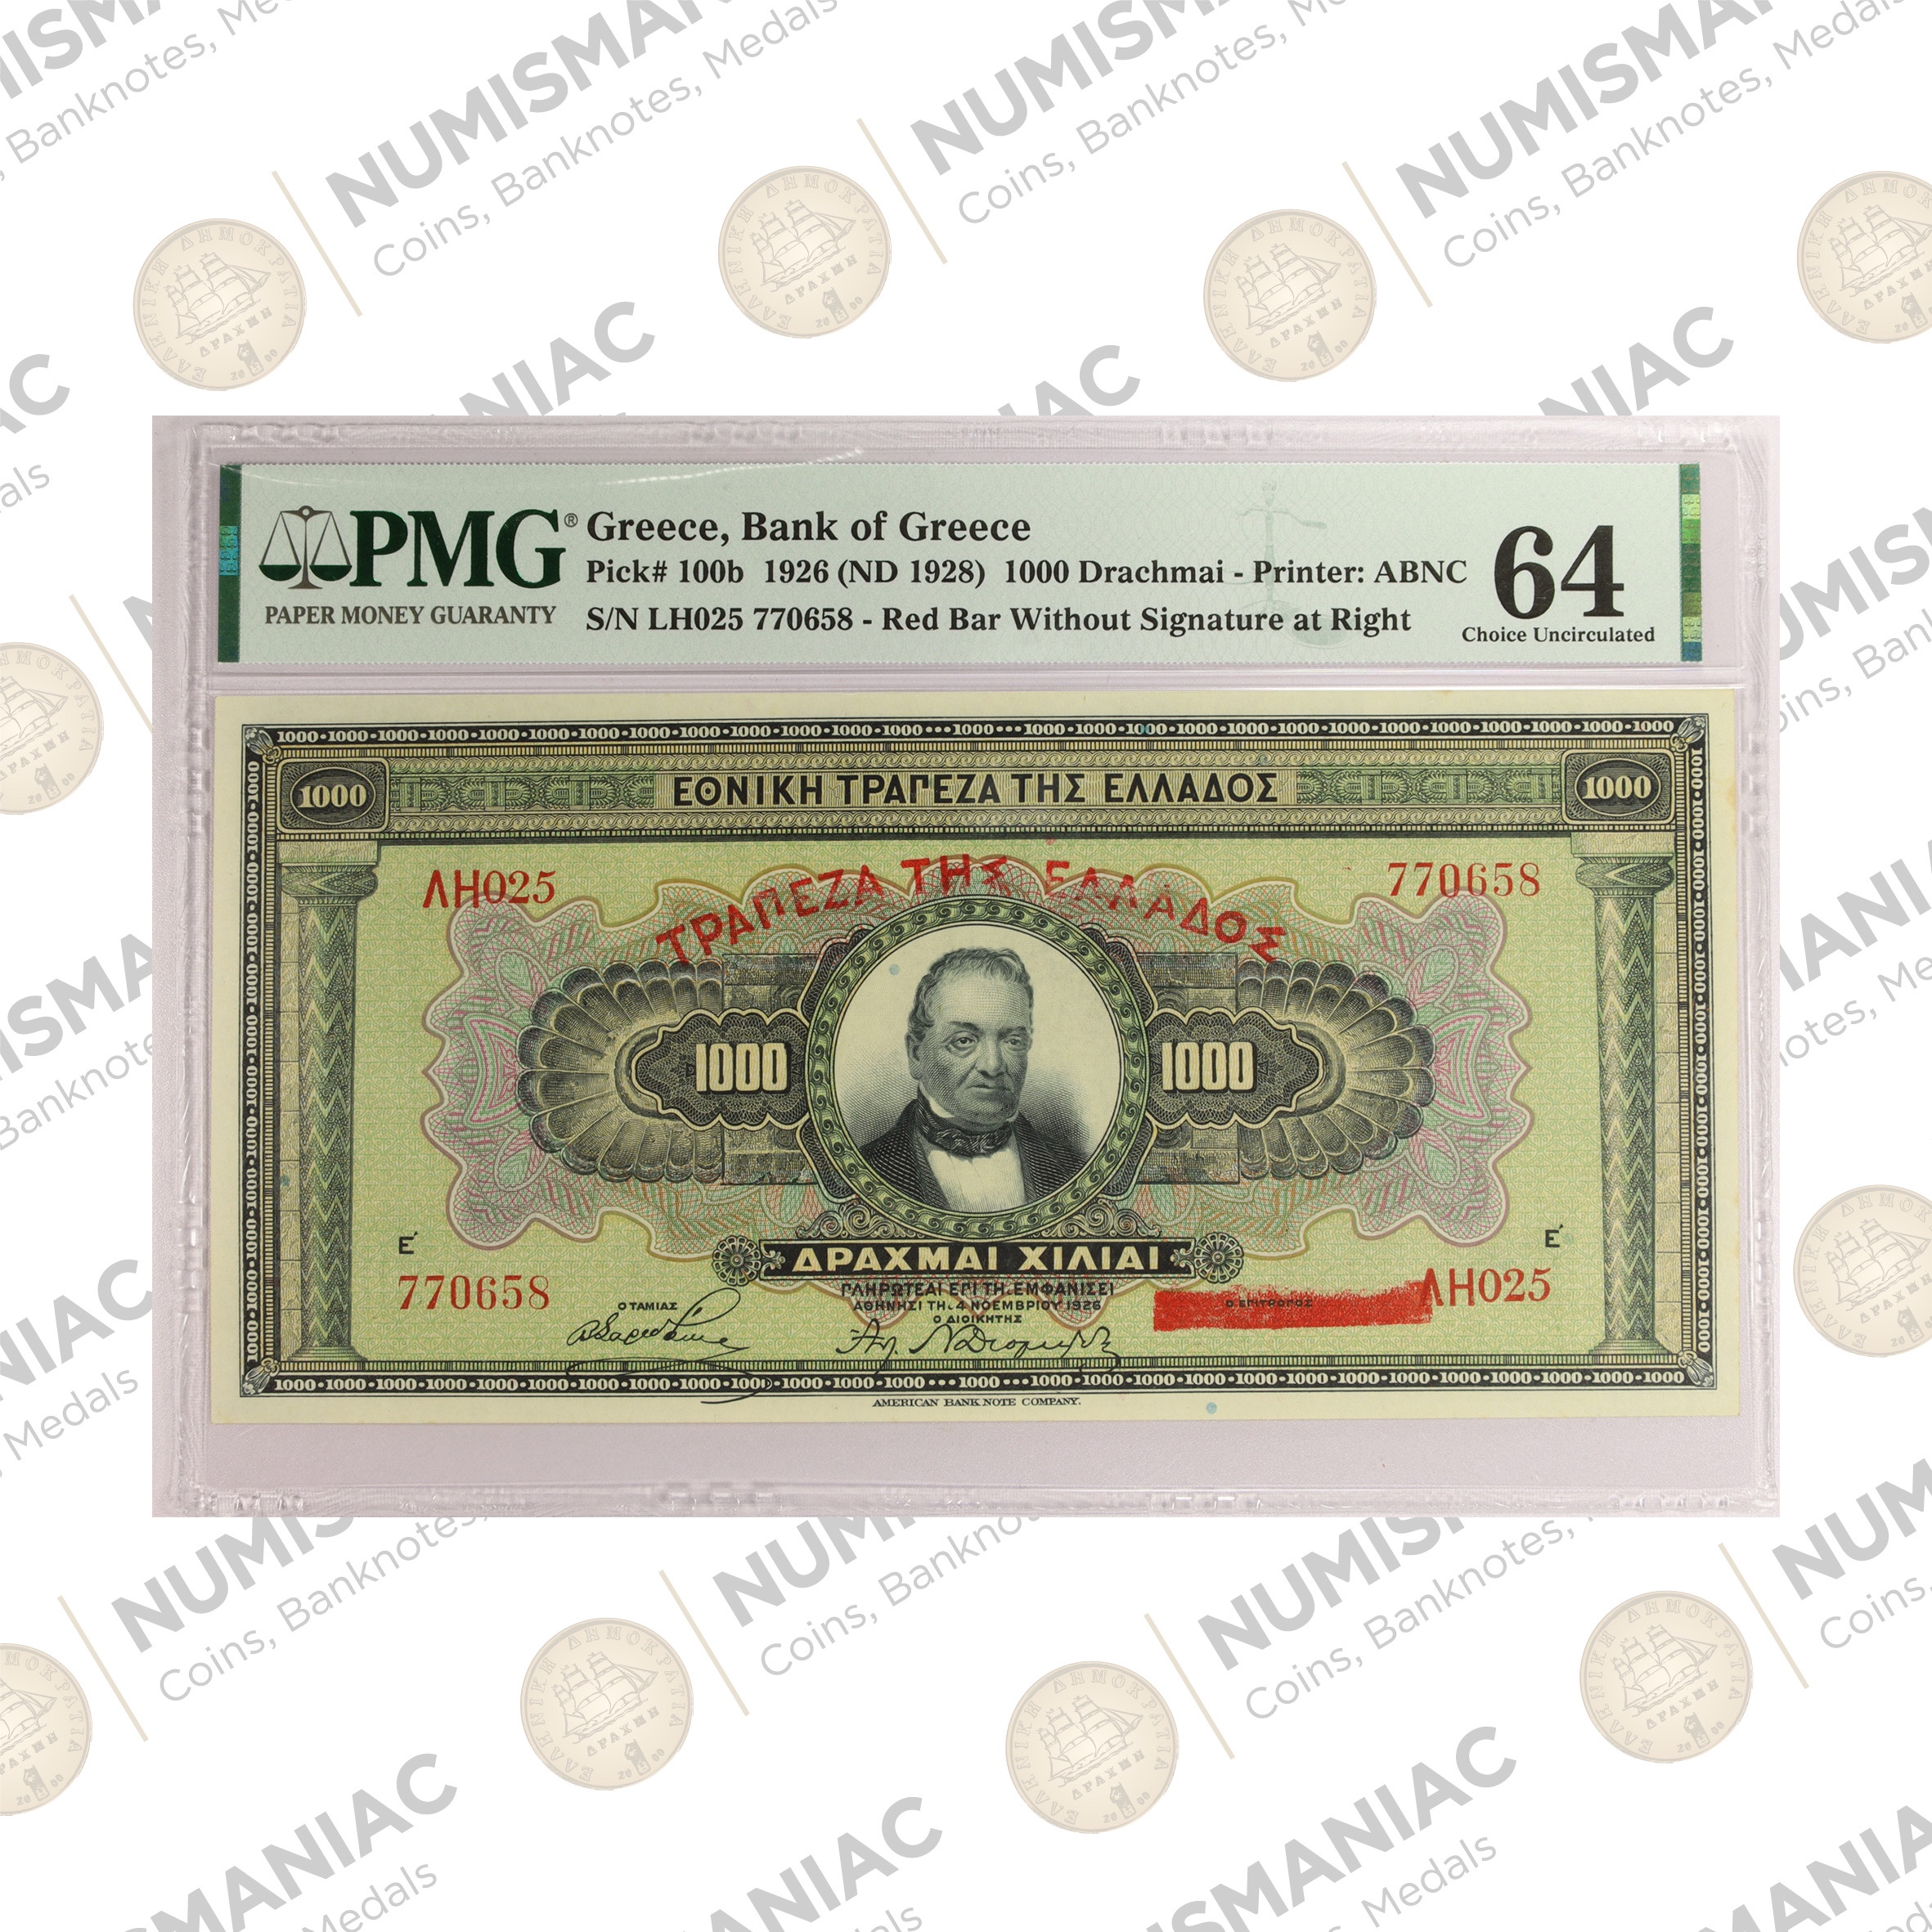 Greece 🇬🇷 1926 (ND1928) 1000 Drachmai Banknote Pick#100b PMG 64 A